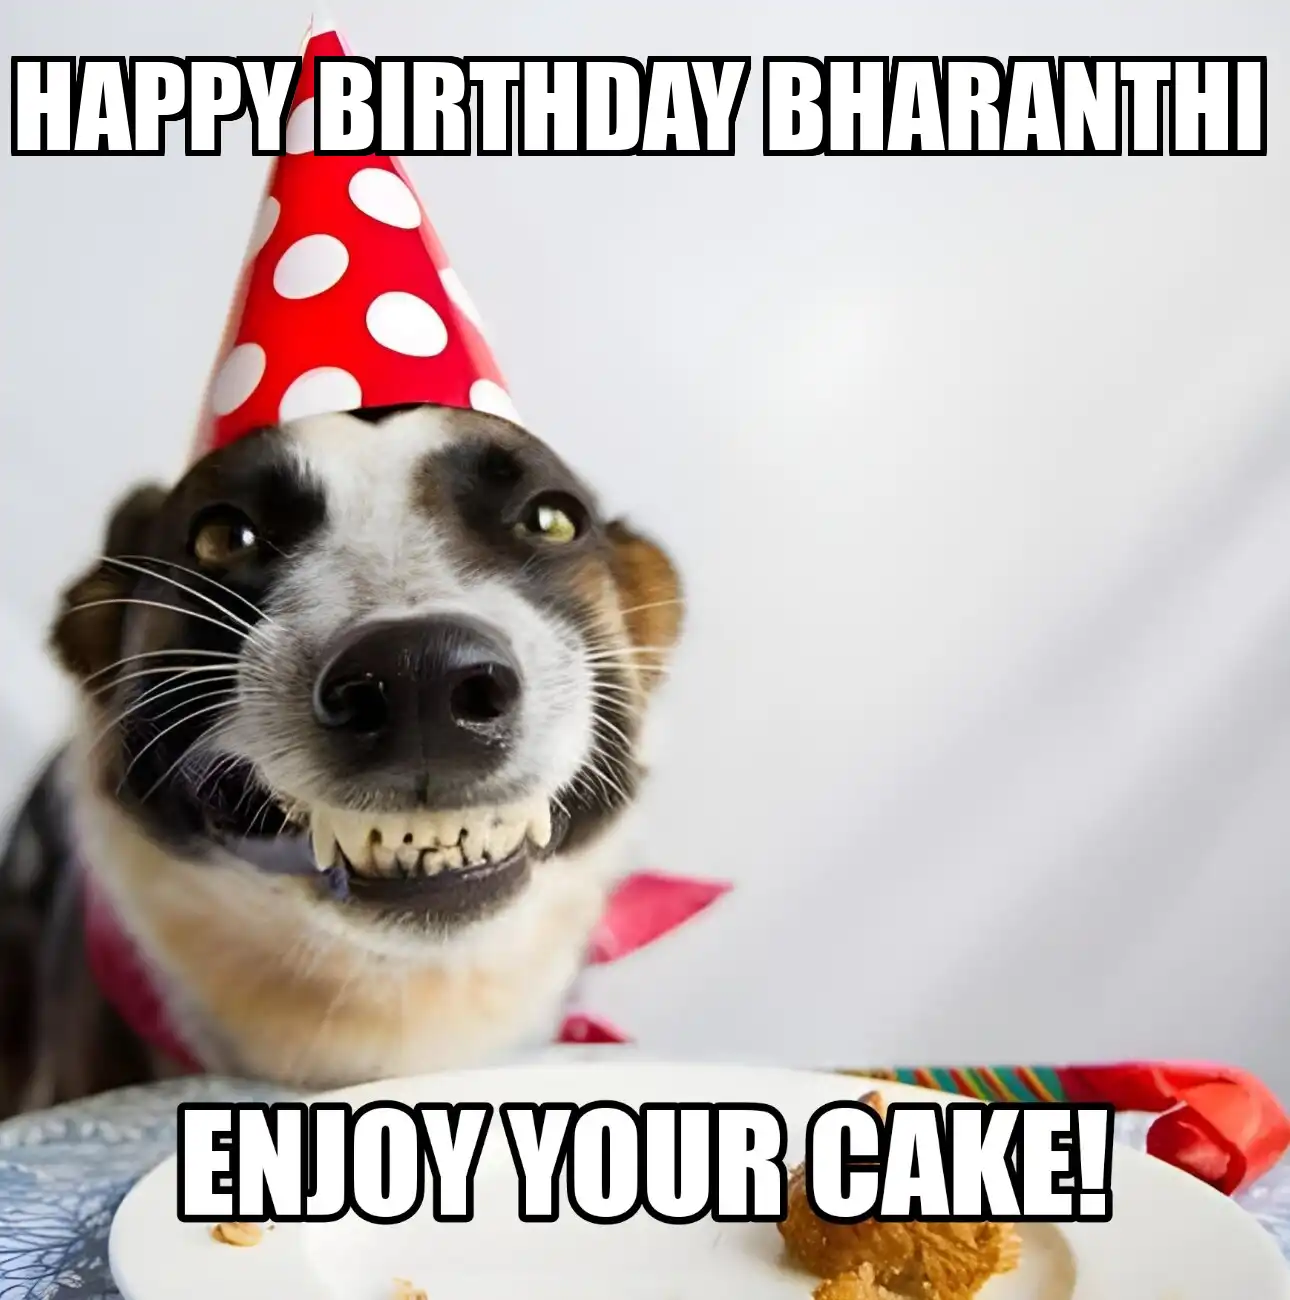 Happy Birthday Bharanthi Enjoy Your Cake Dog Meme